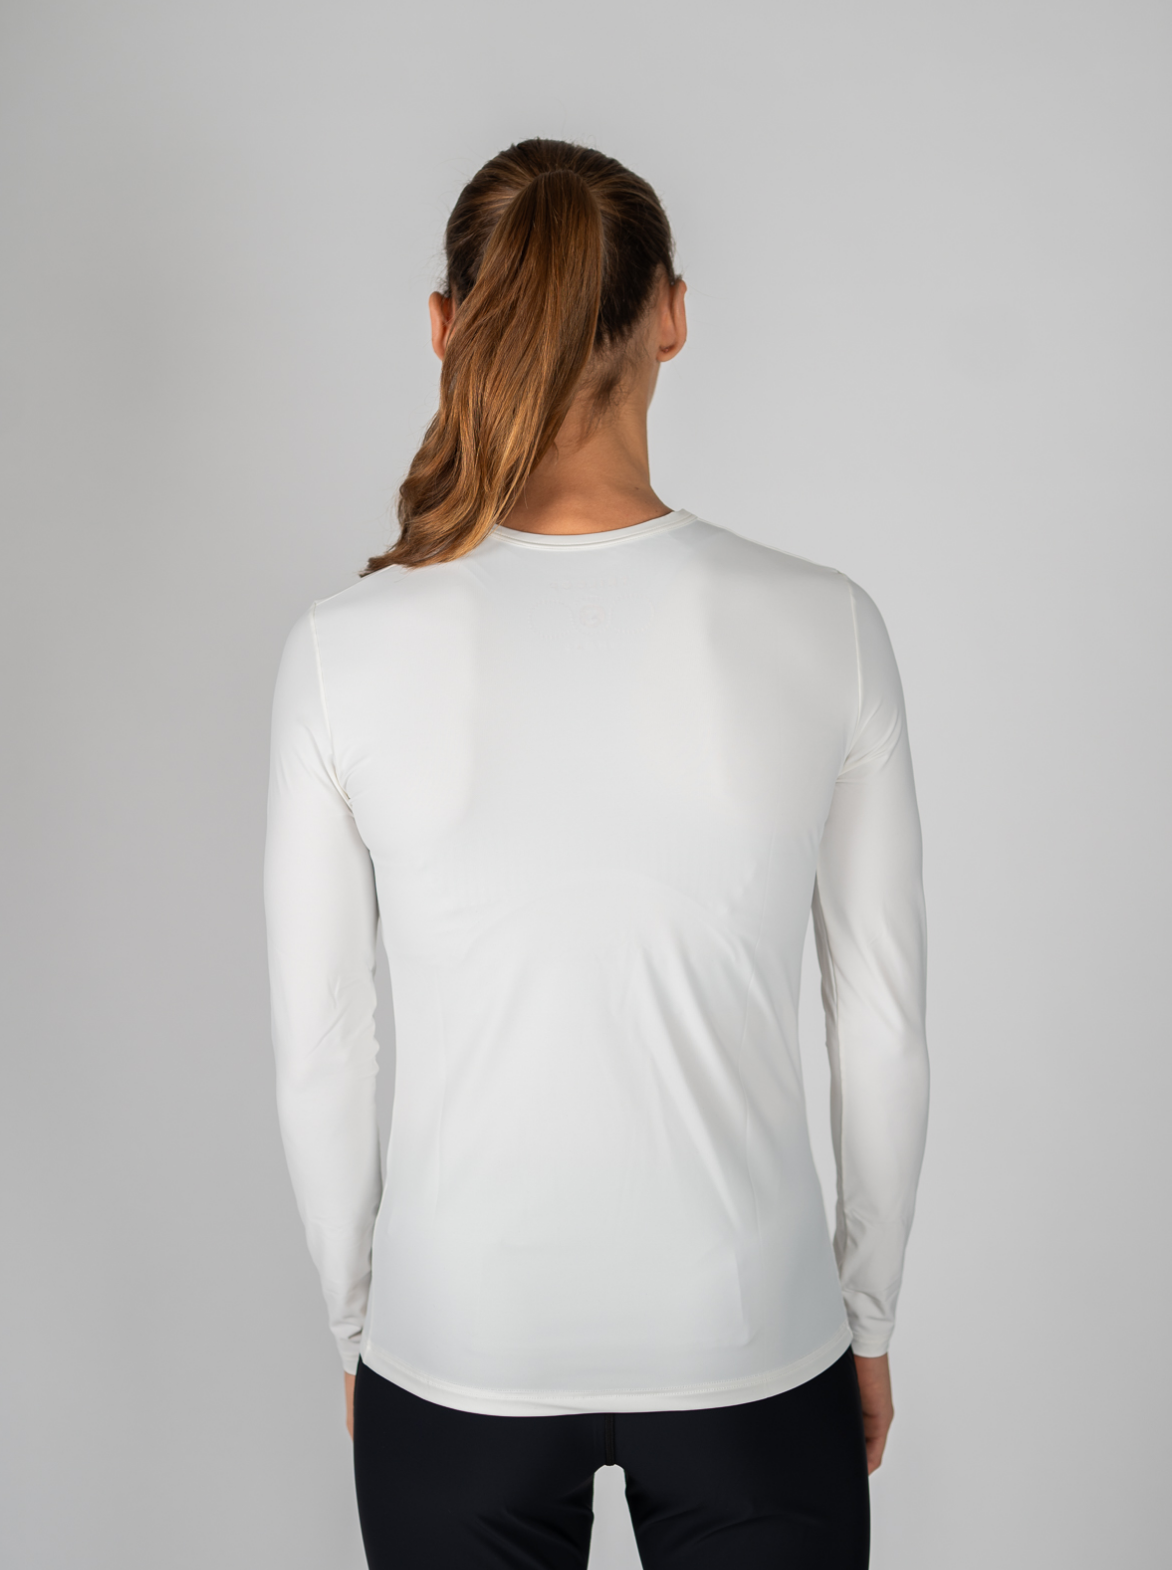 T-shirt Manches Longues Technique Femme - Beige - Ventes privées